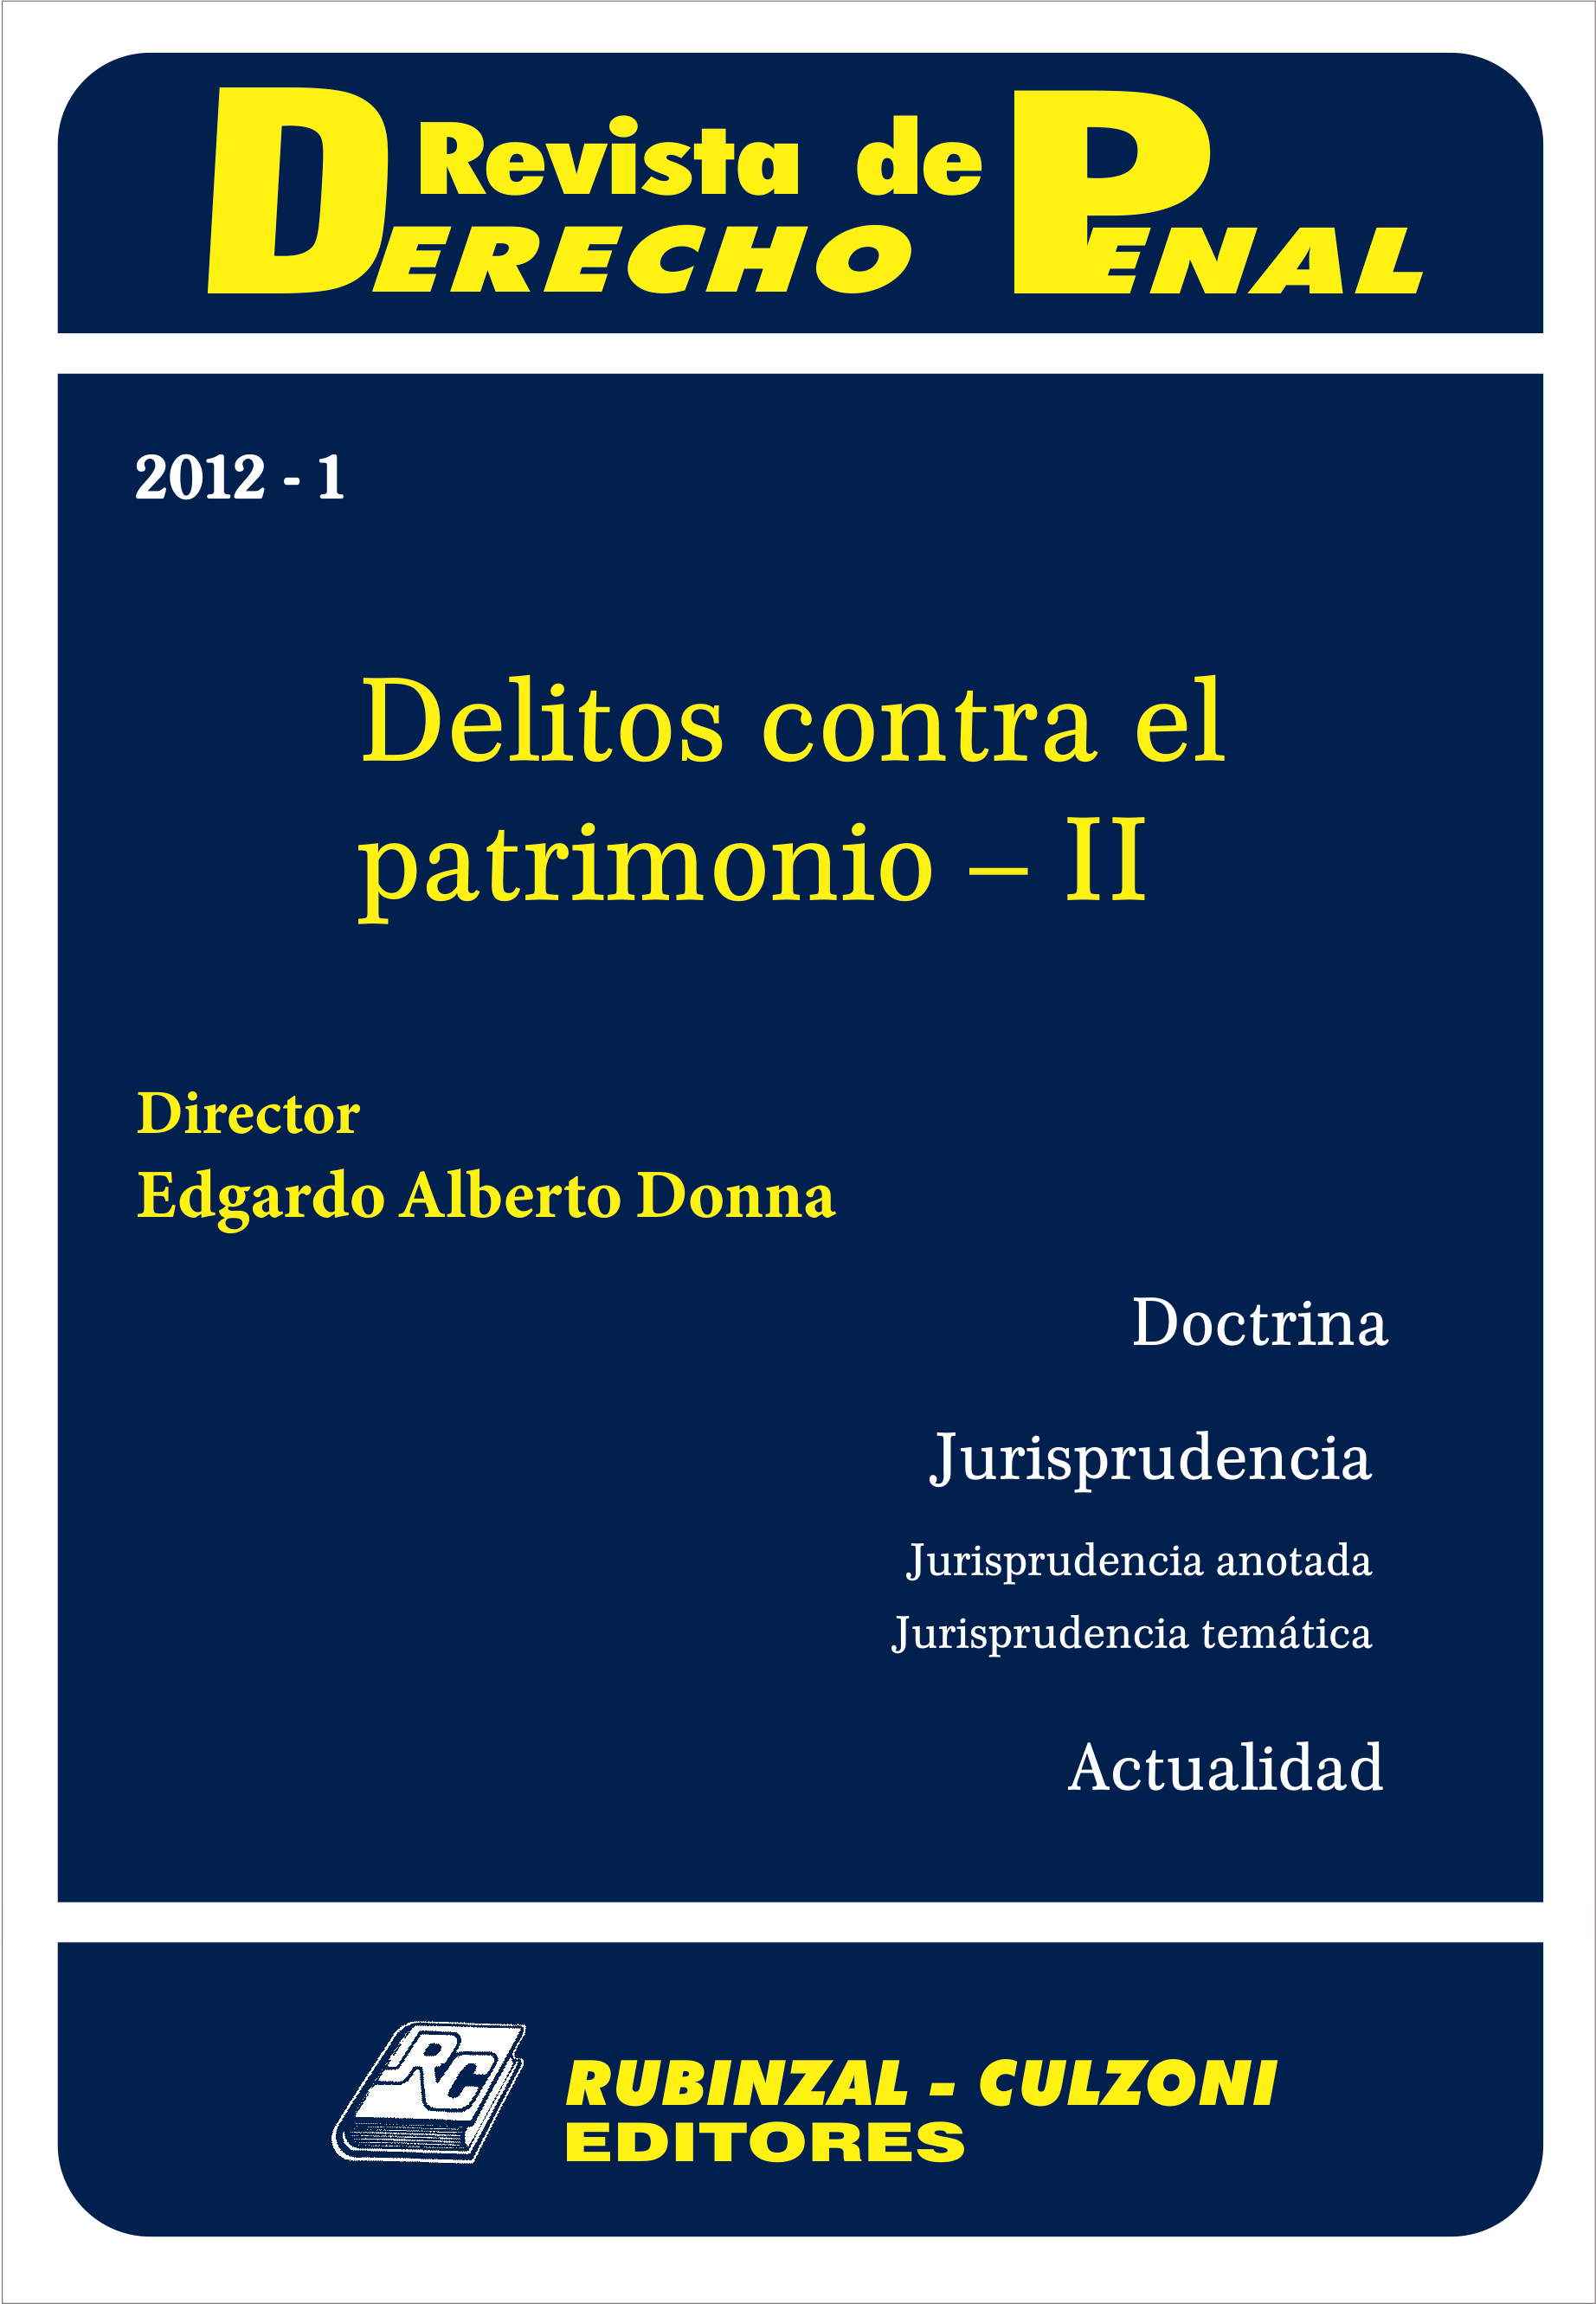 Revista de Derecho Penal - Delitos contra el patrimonio - II. [2012-1]